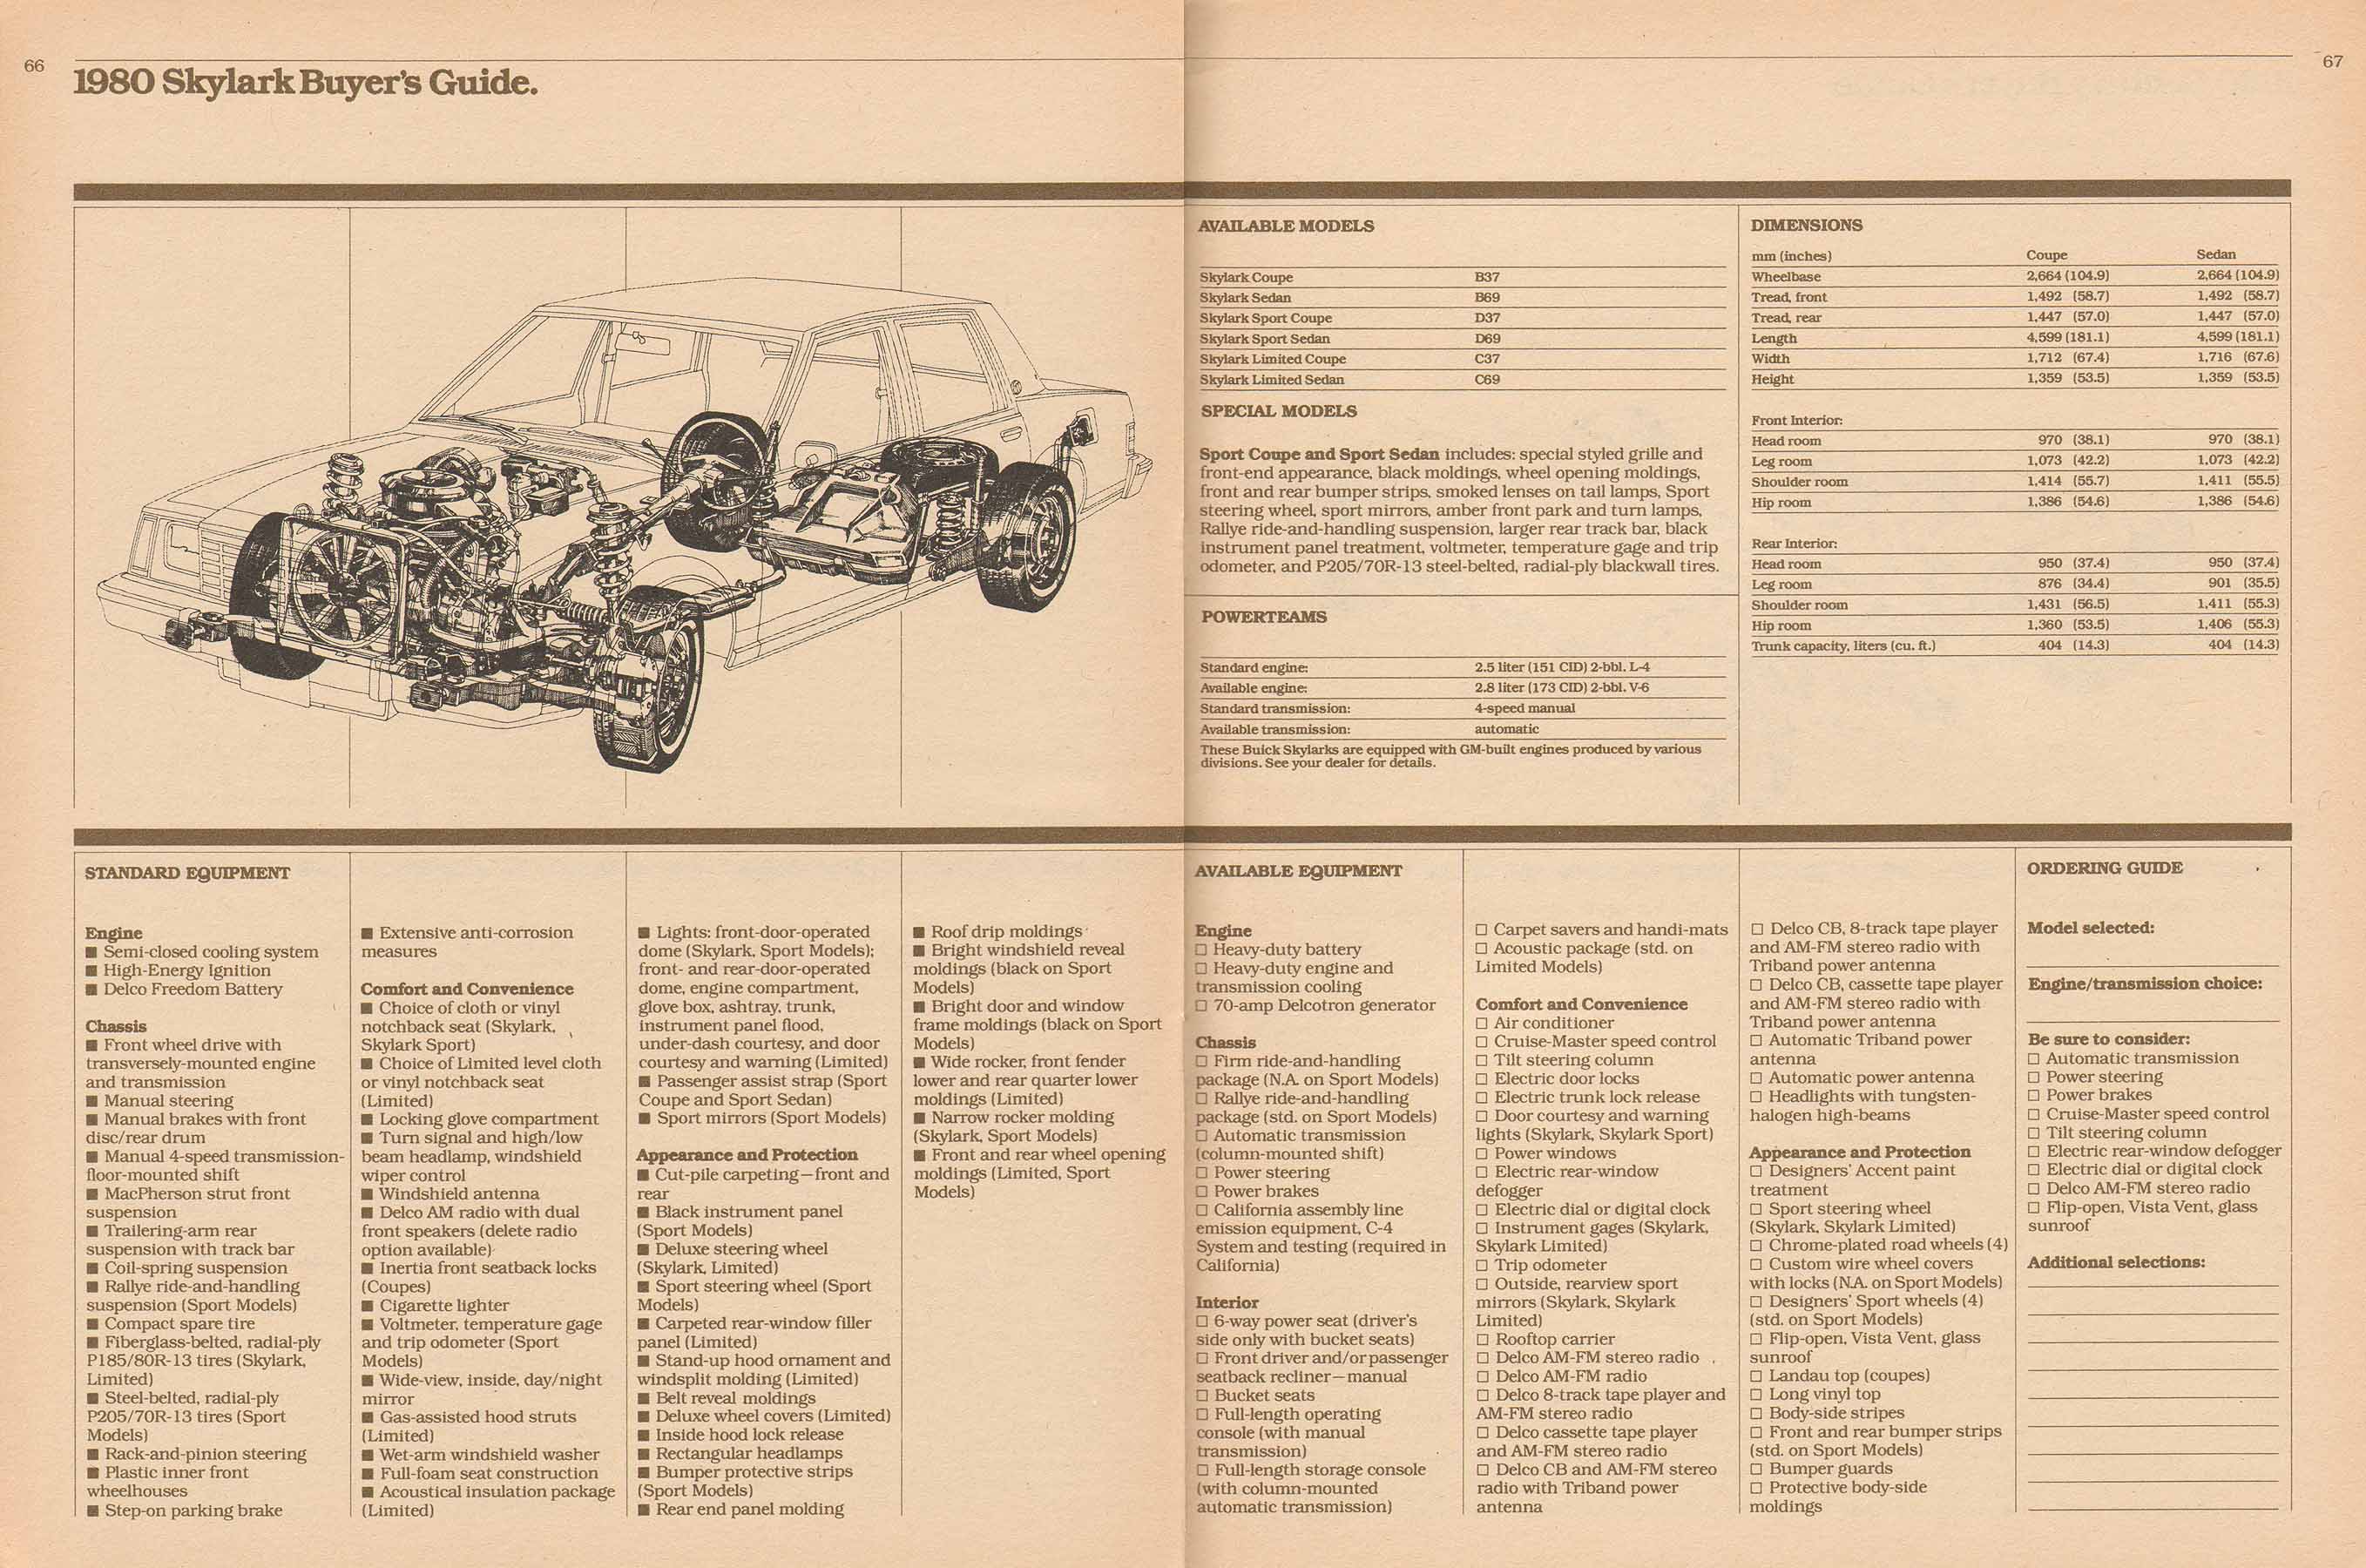 1980 Buick Full Line Prestige-66-67